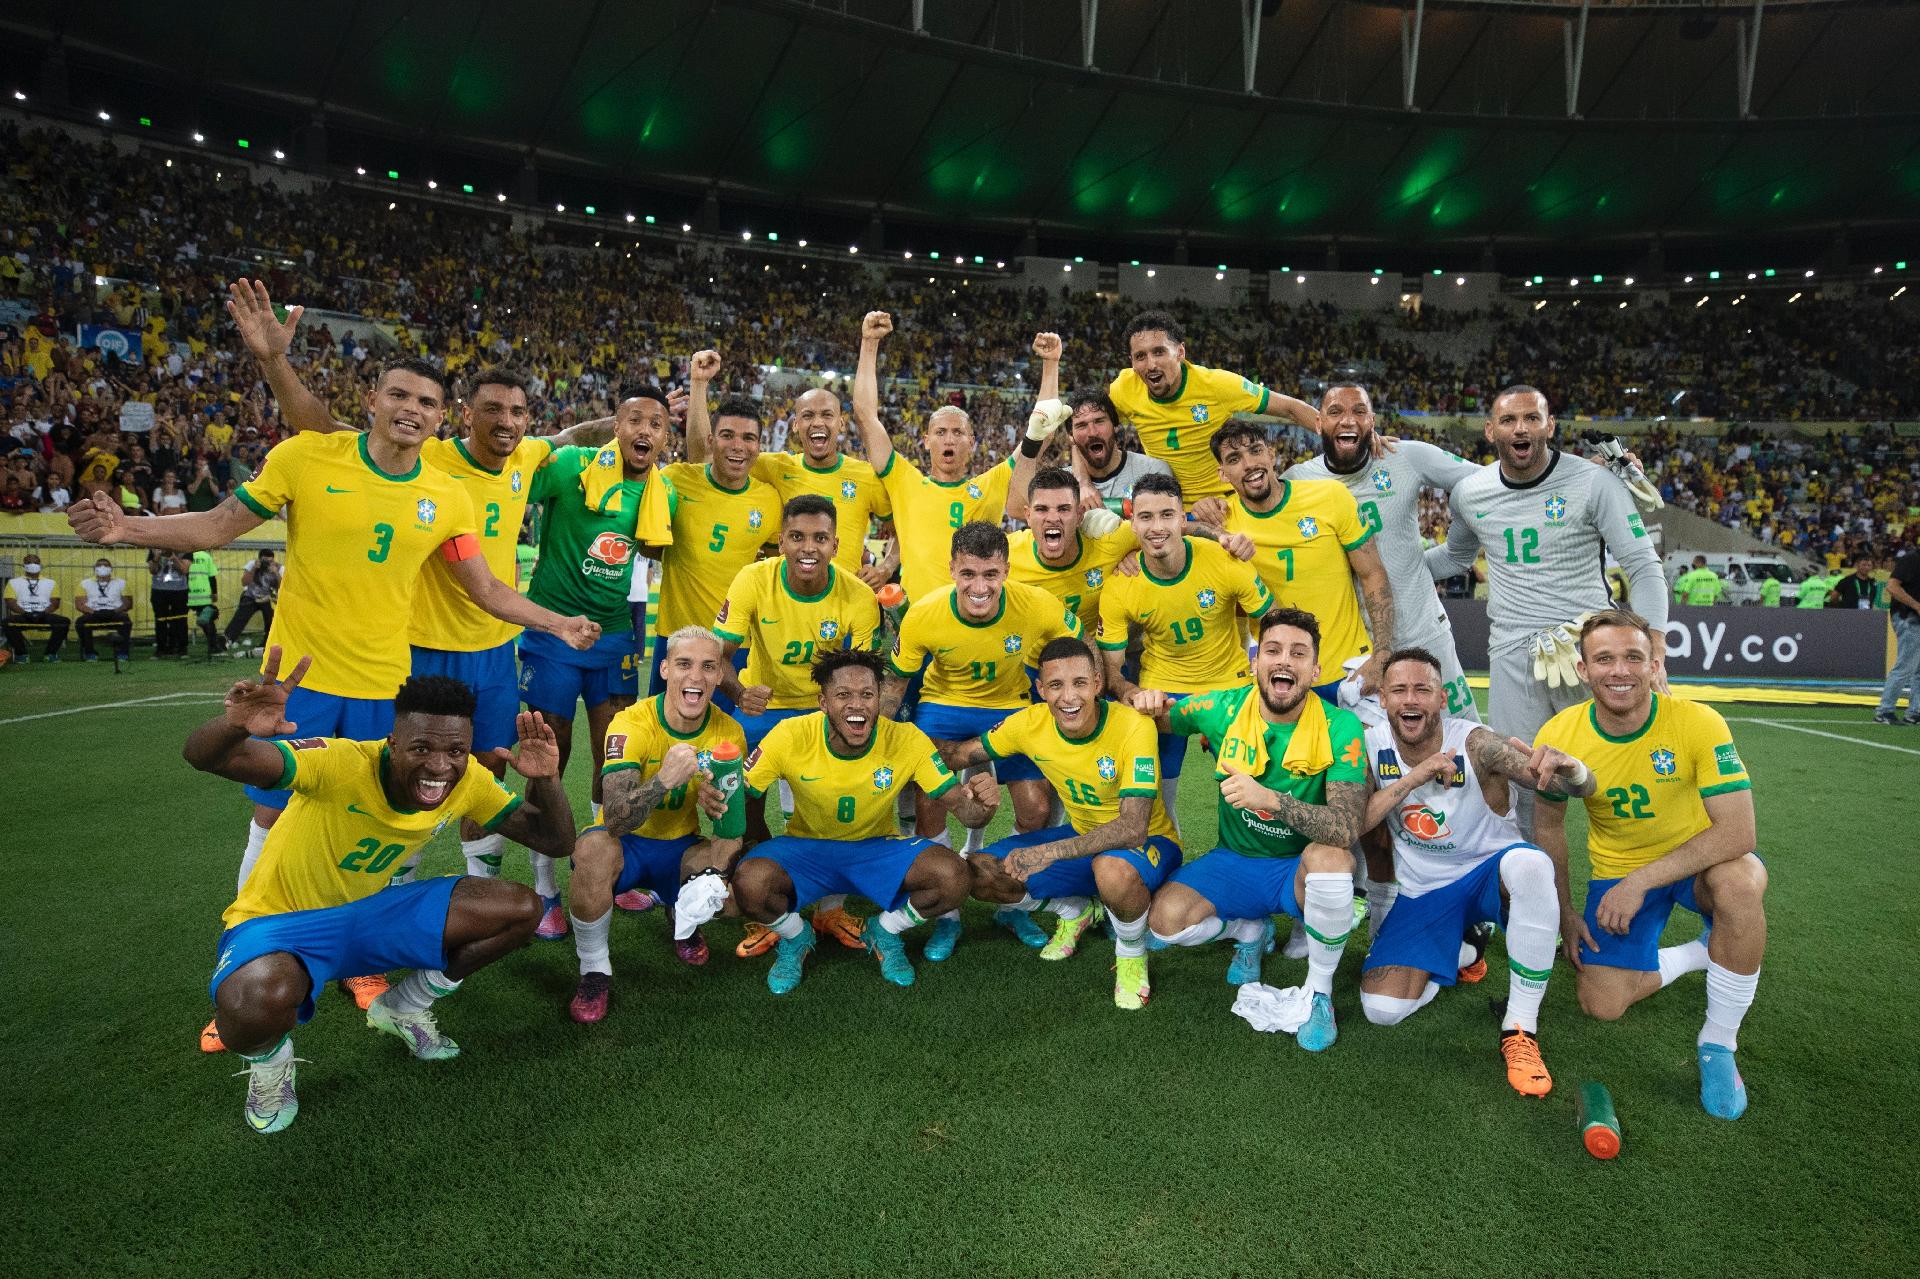 Escudo da CBF - Seleção Brasileira de Futebol  Seleção brasileira de  futebol, Fotografia de esporte, Seleção brasileira